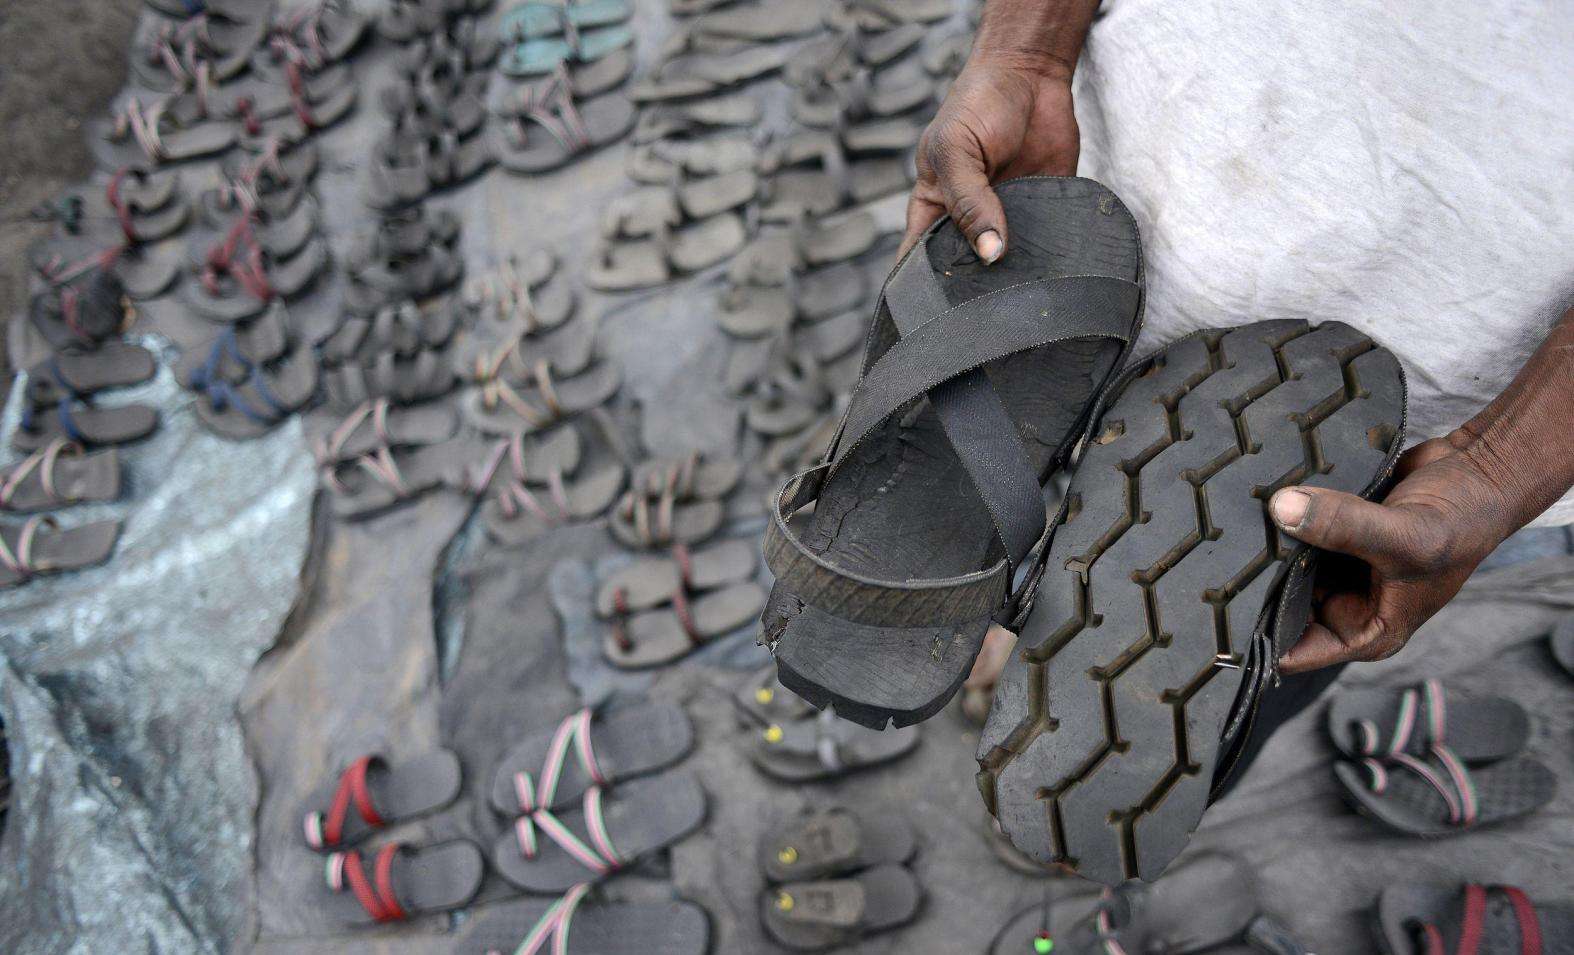 非洲成批从中国回收旧轮胎，加工后卖5-10元，国内1年回收655万吨